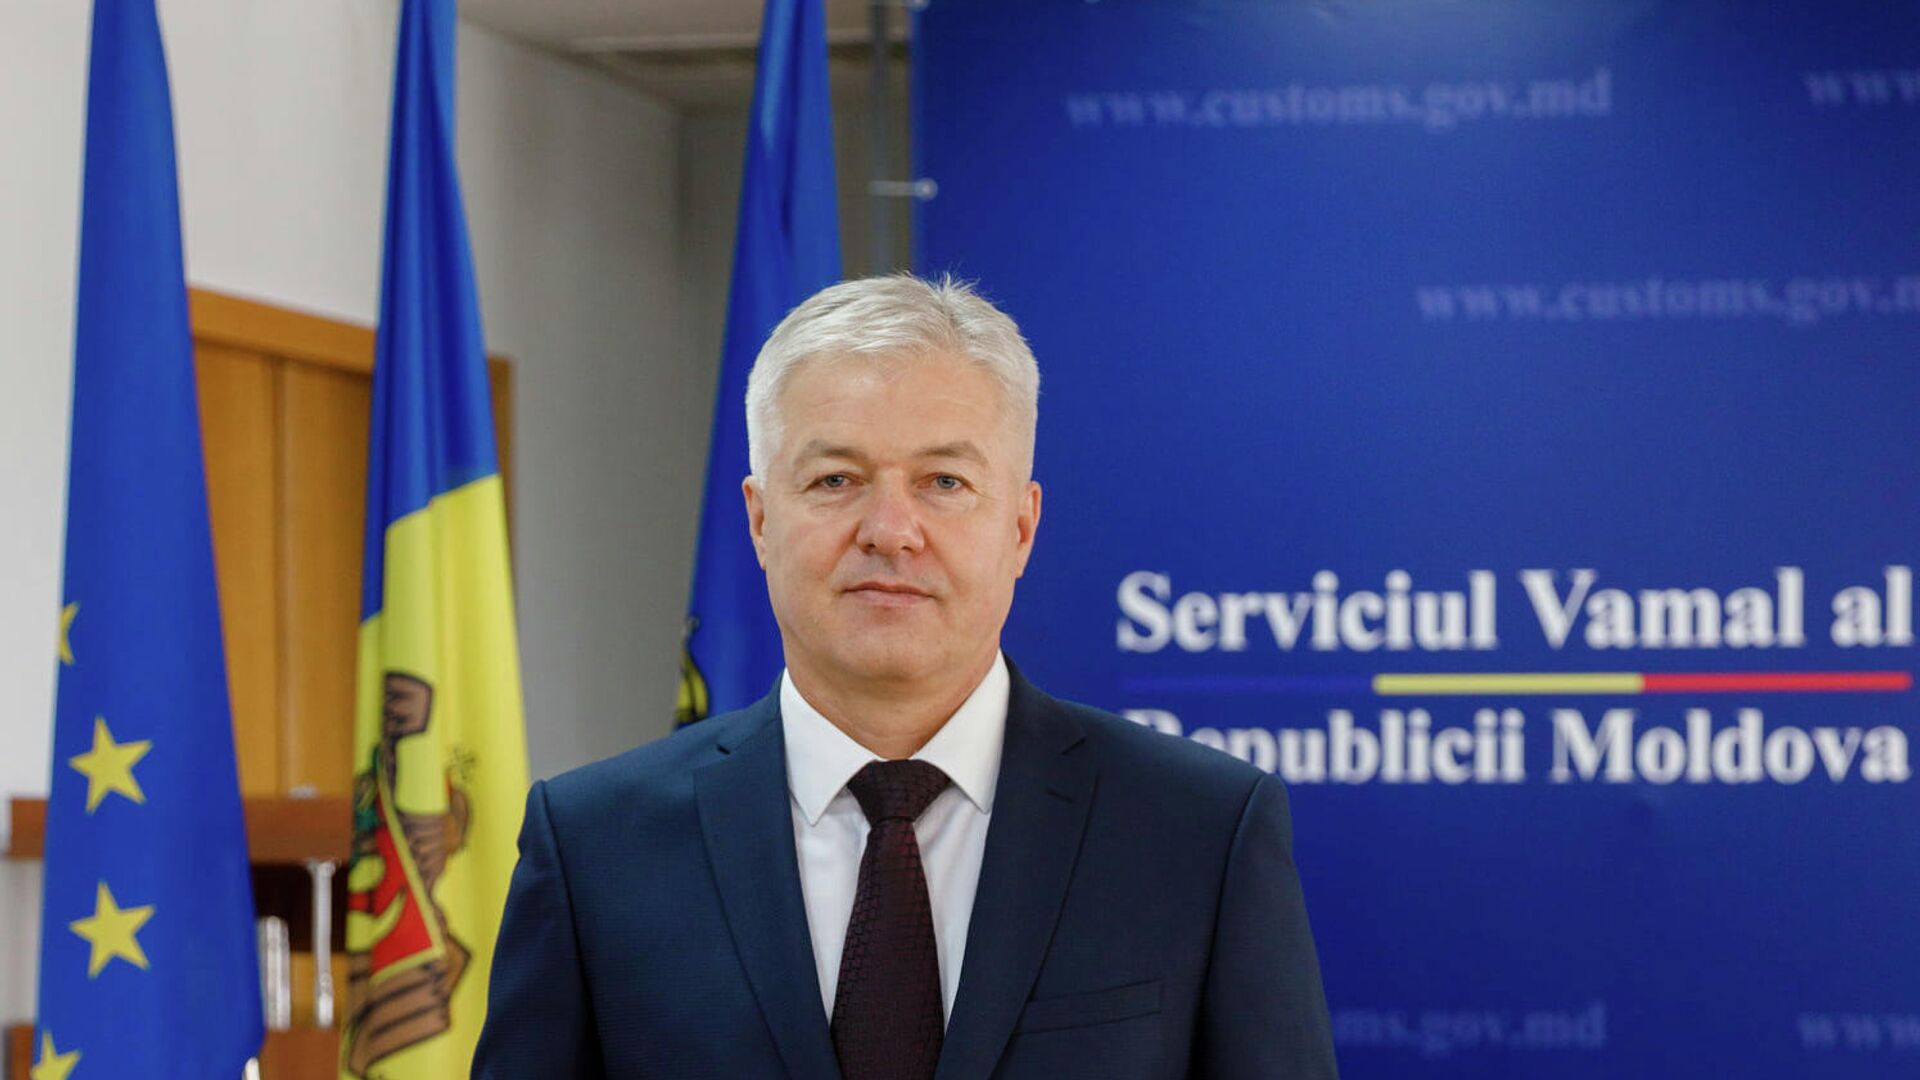 Directorul Serviciului Vamal, Sergiu Burduja, a demisionat din funcție - Sputnik Moldova, 1920, 01.09.2021